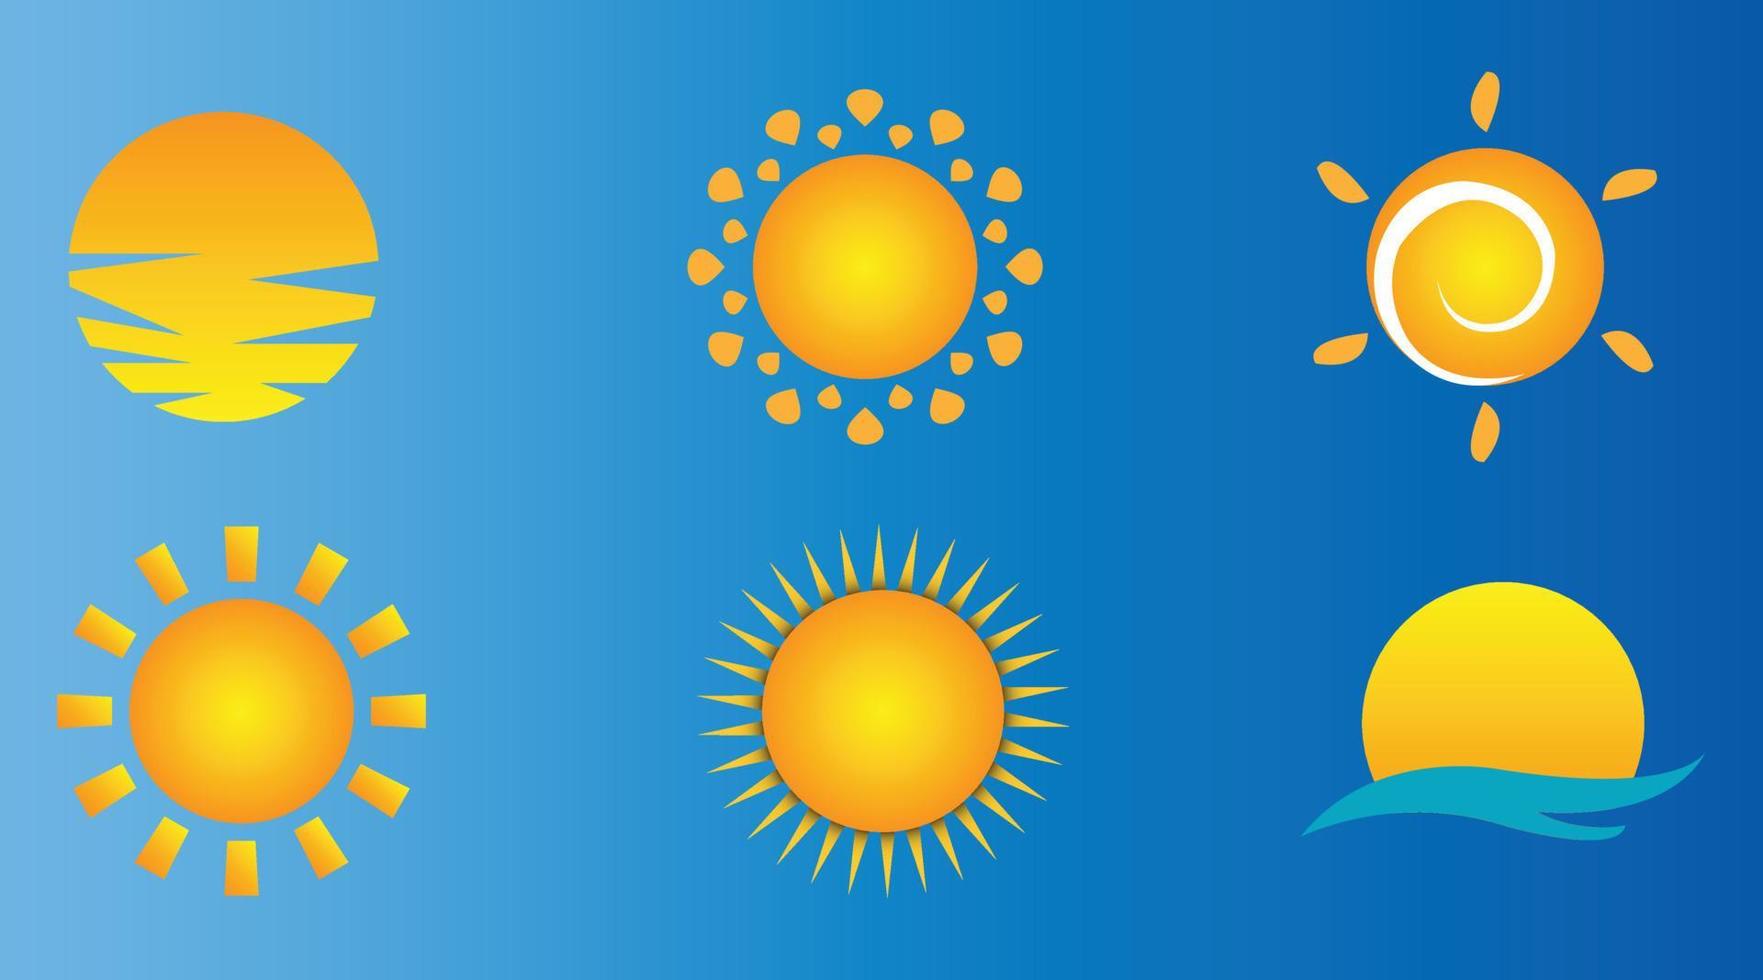 Sonne-Icon-Set. sonnenschein, heißer sommer und sonnenaufgang symbole, goldene sonnenlichtkreise, sonnen- und sonnige wetterzeichenvektorsätze. vektor